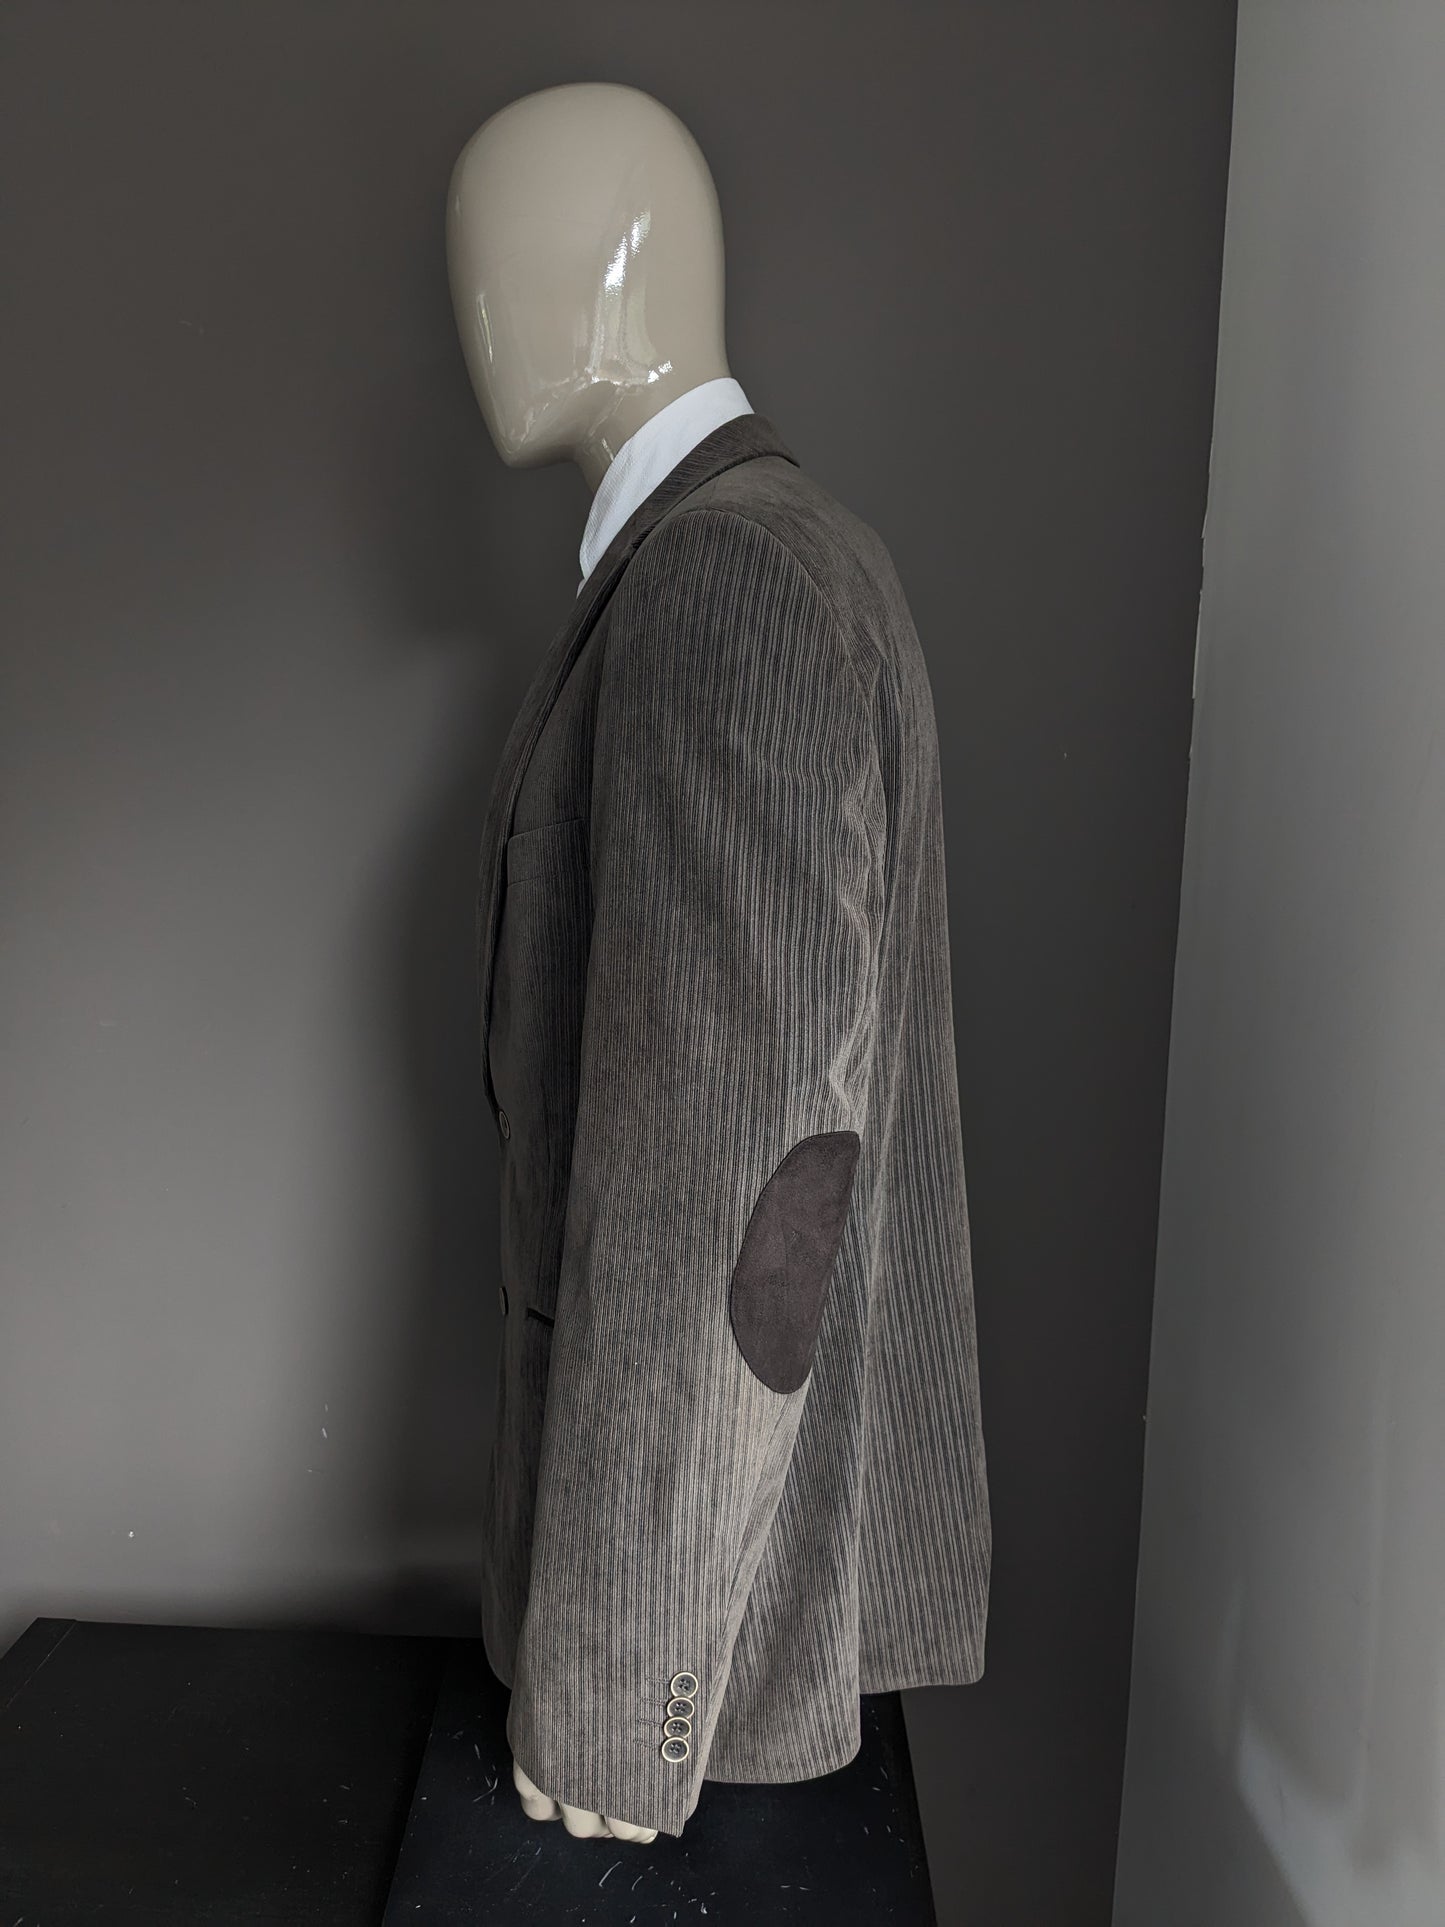 Bogart Rippenjacke mit Ellbogenflecken. Schöne Rippe. Graubraun gefärbt. Größe 106 (53 / l)